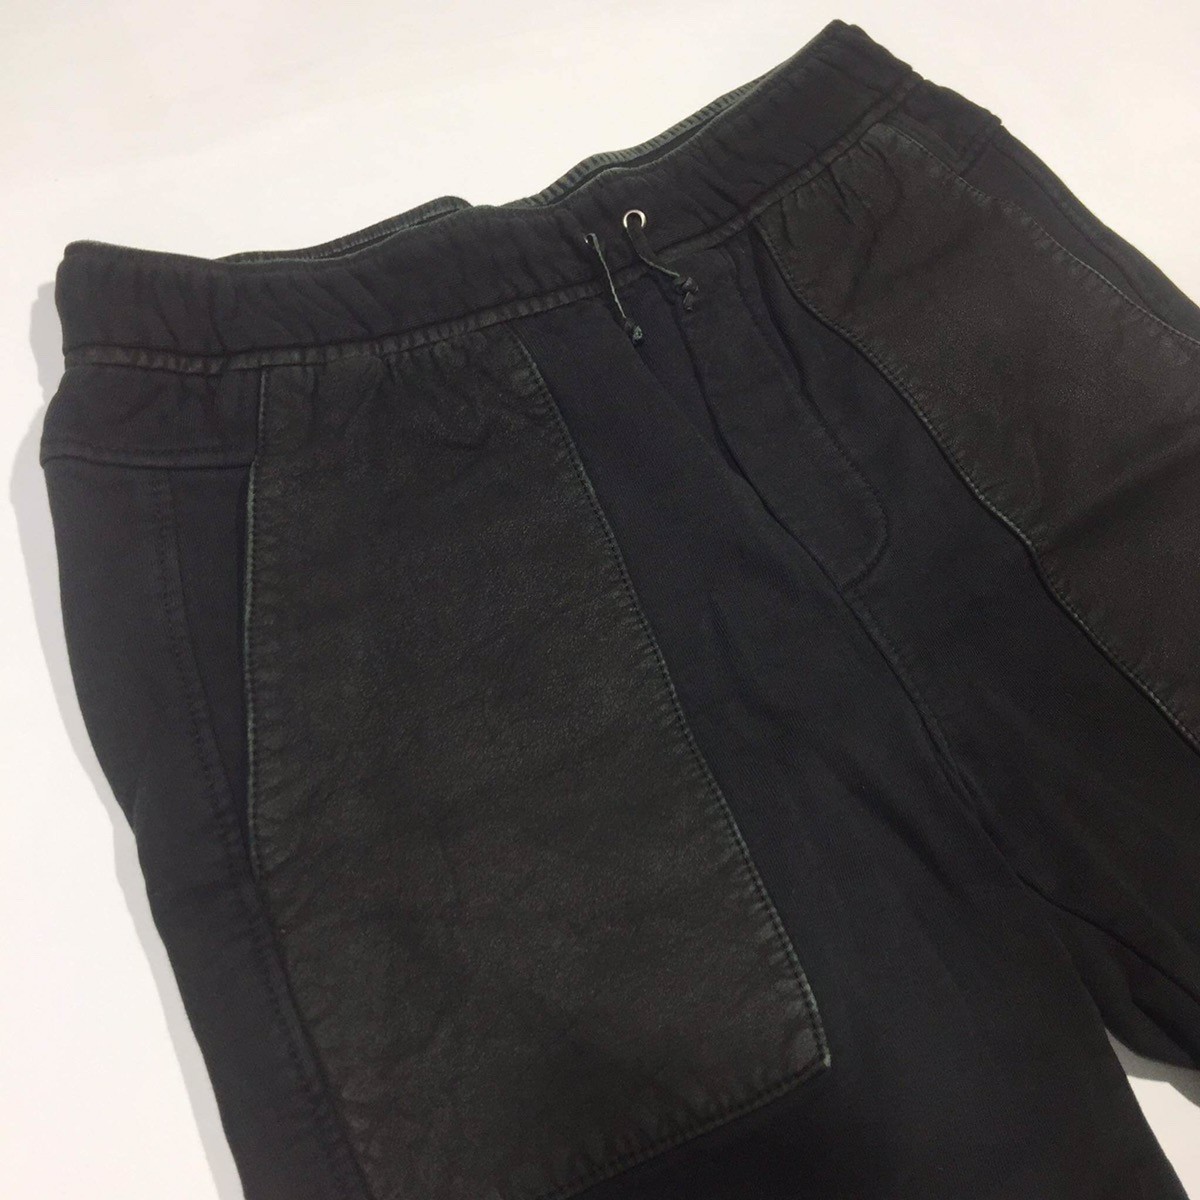 Paneled Shorts - 4